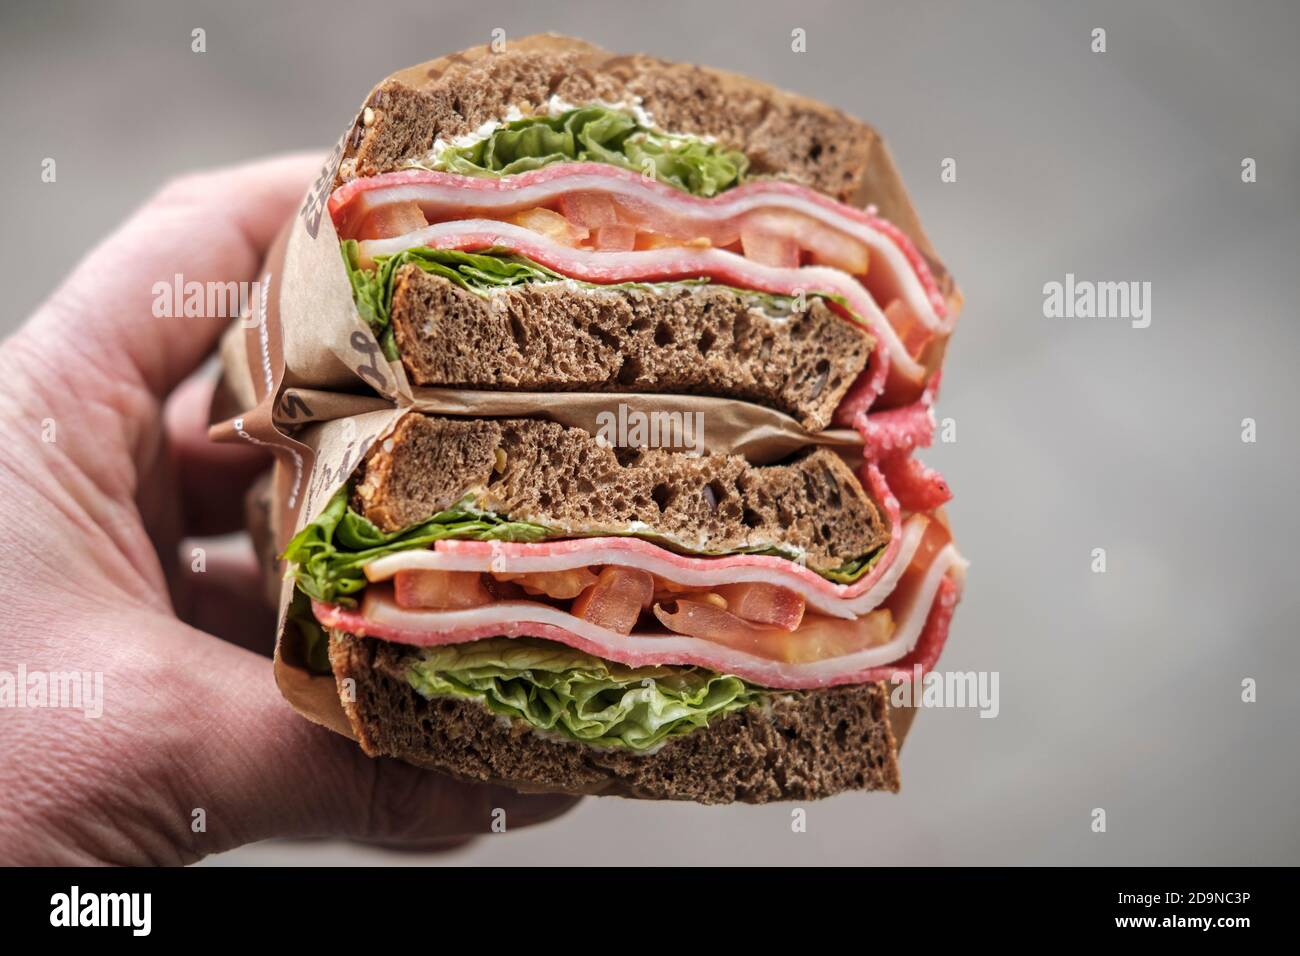 Sandwich Deli - salami, fromage, laisse et tomates, pain complet, gros plan. Banque D'Images